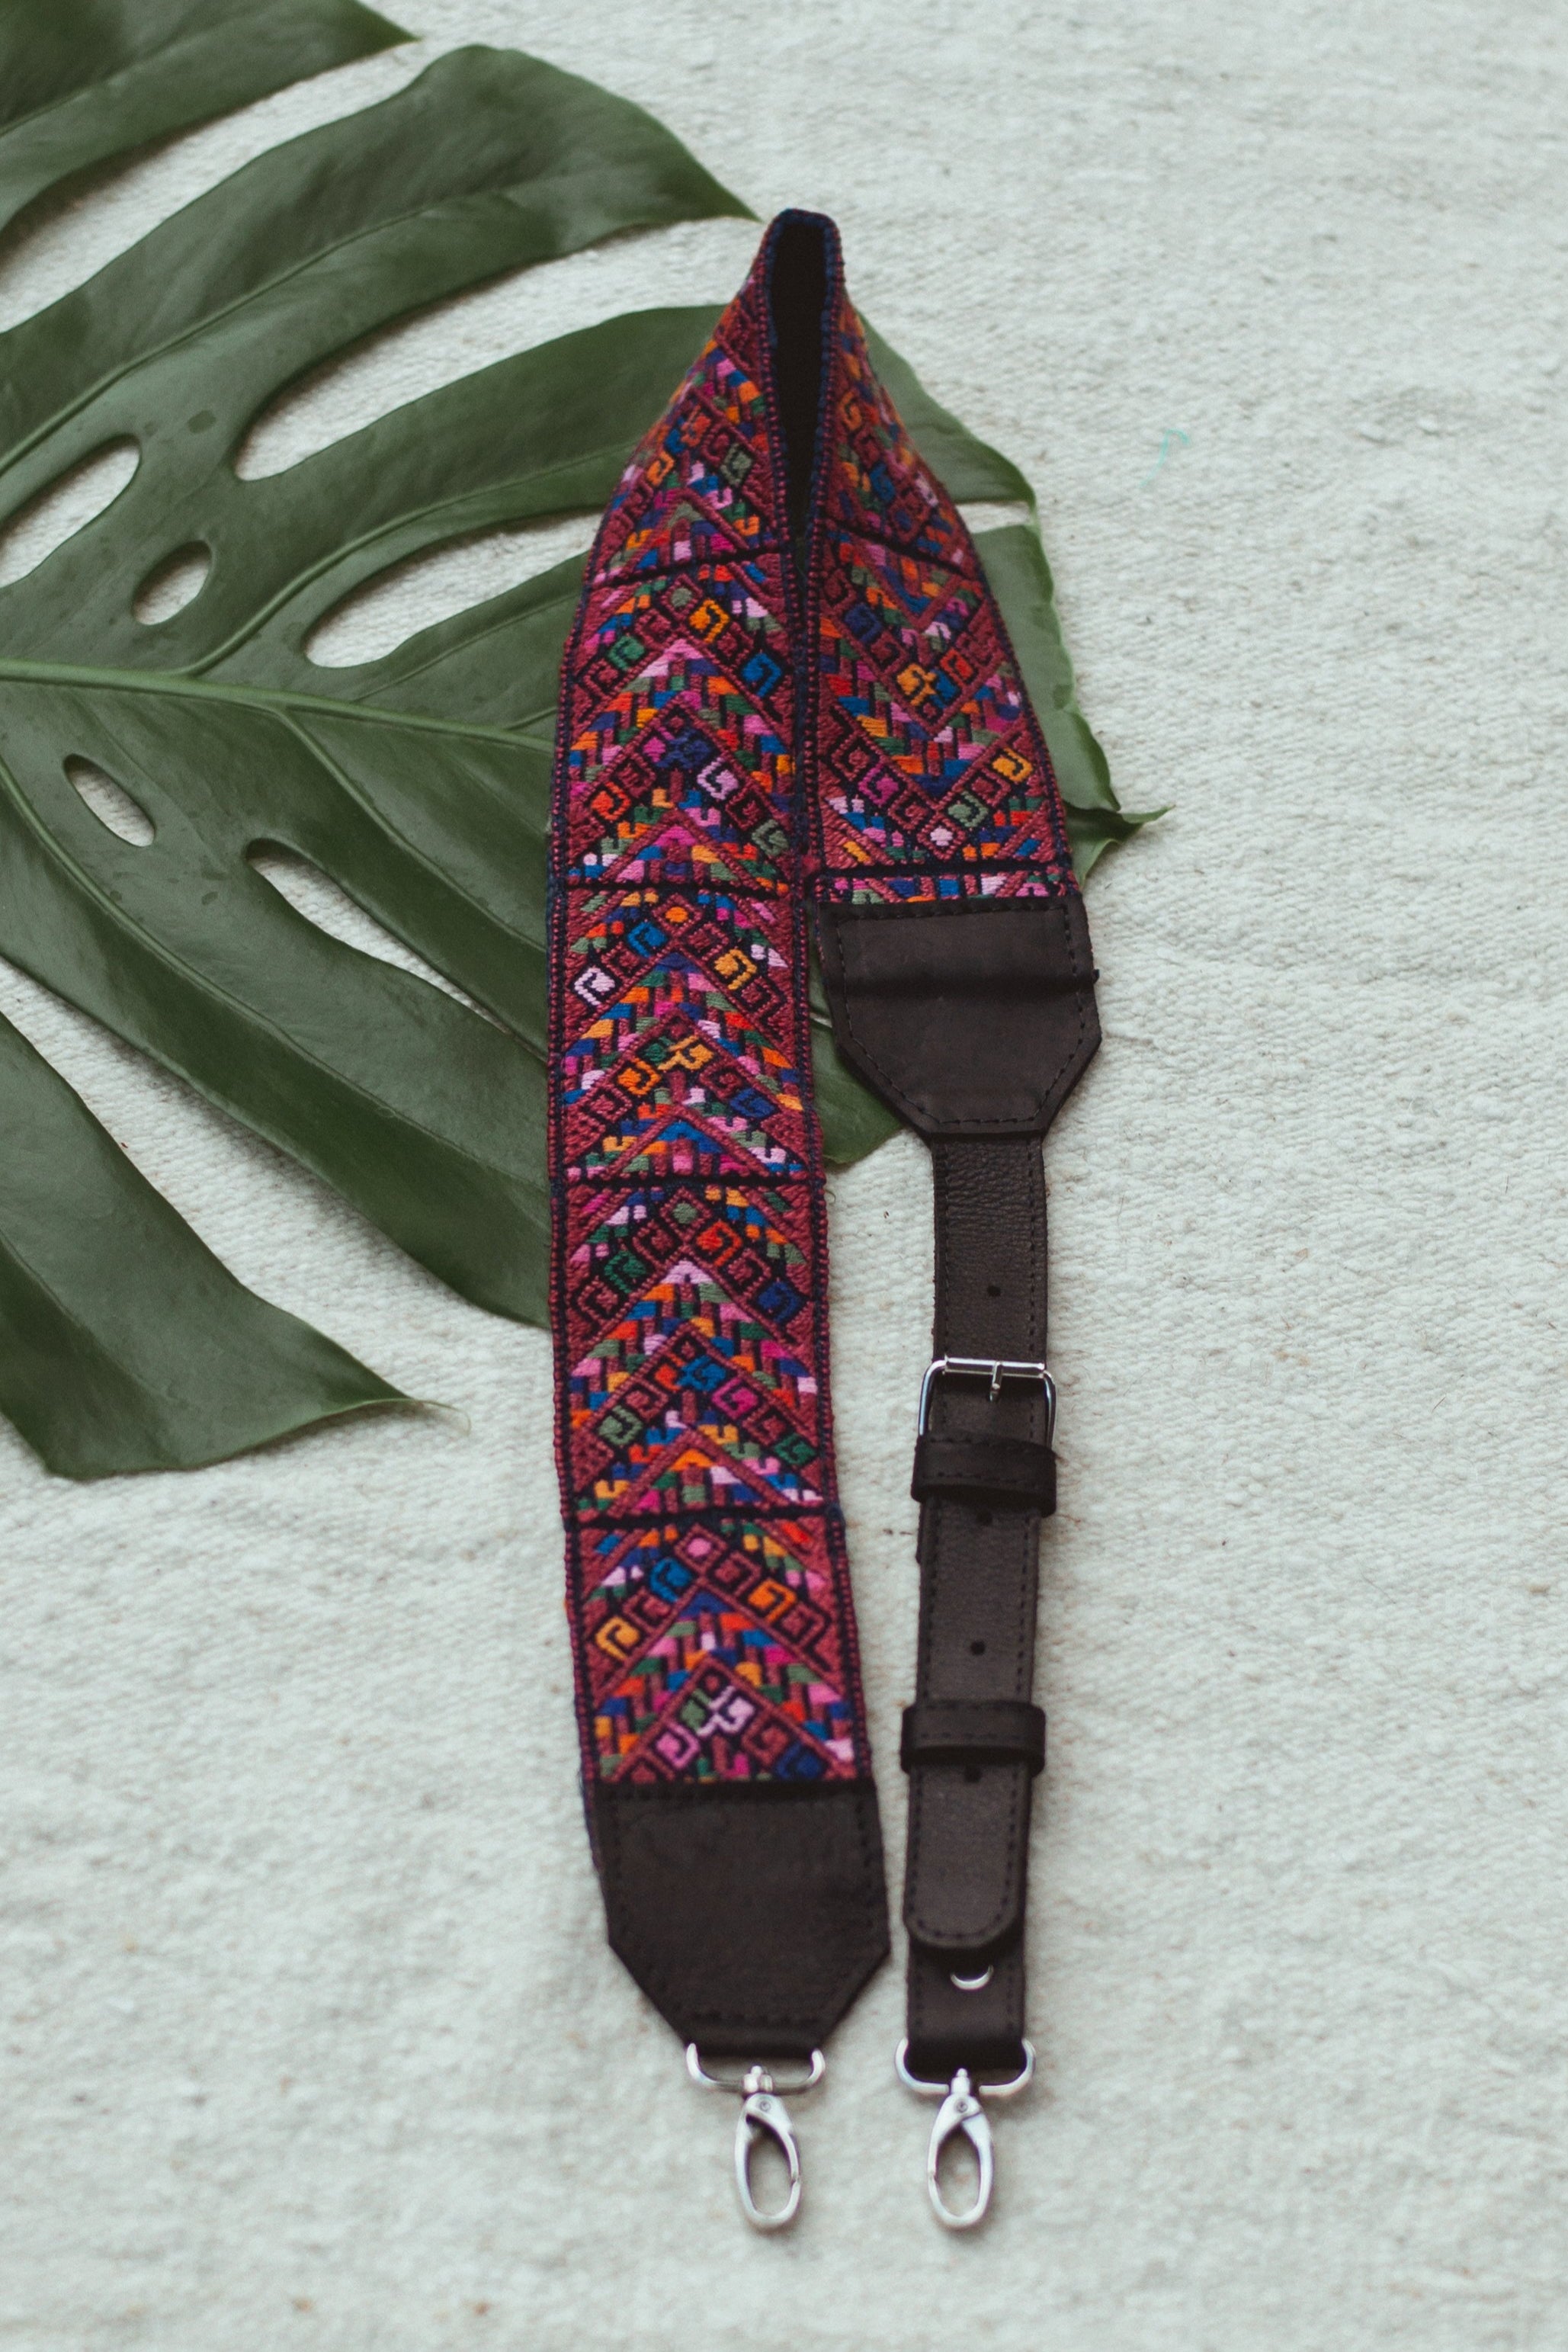 Embroidered Strap - Tesoros Maya